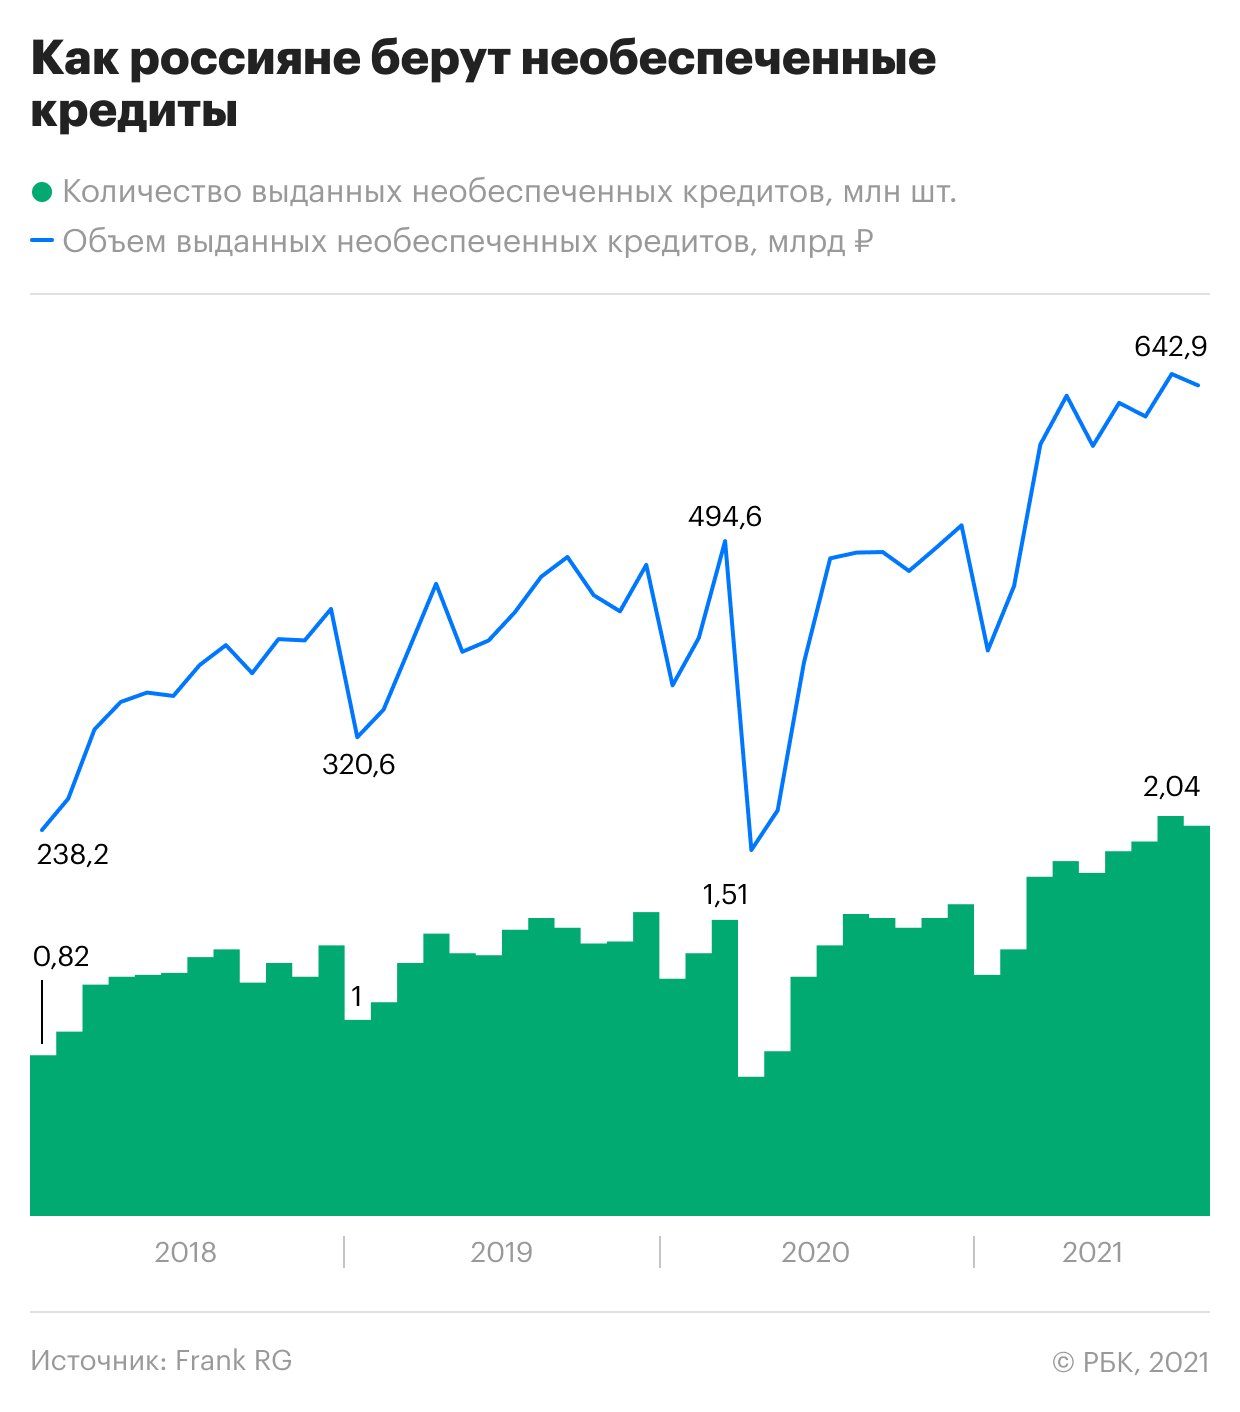 Банки в начале осени сократили выдачи необеспеченных кредитов россиянам